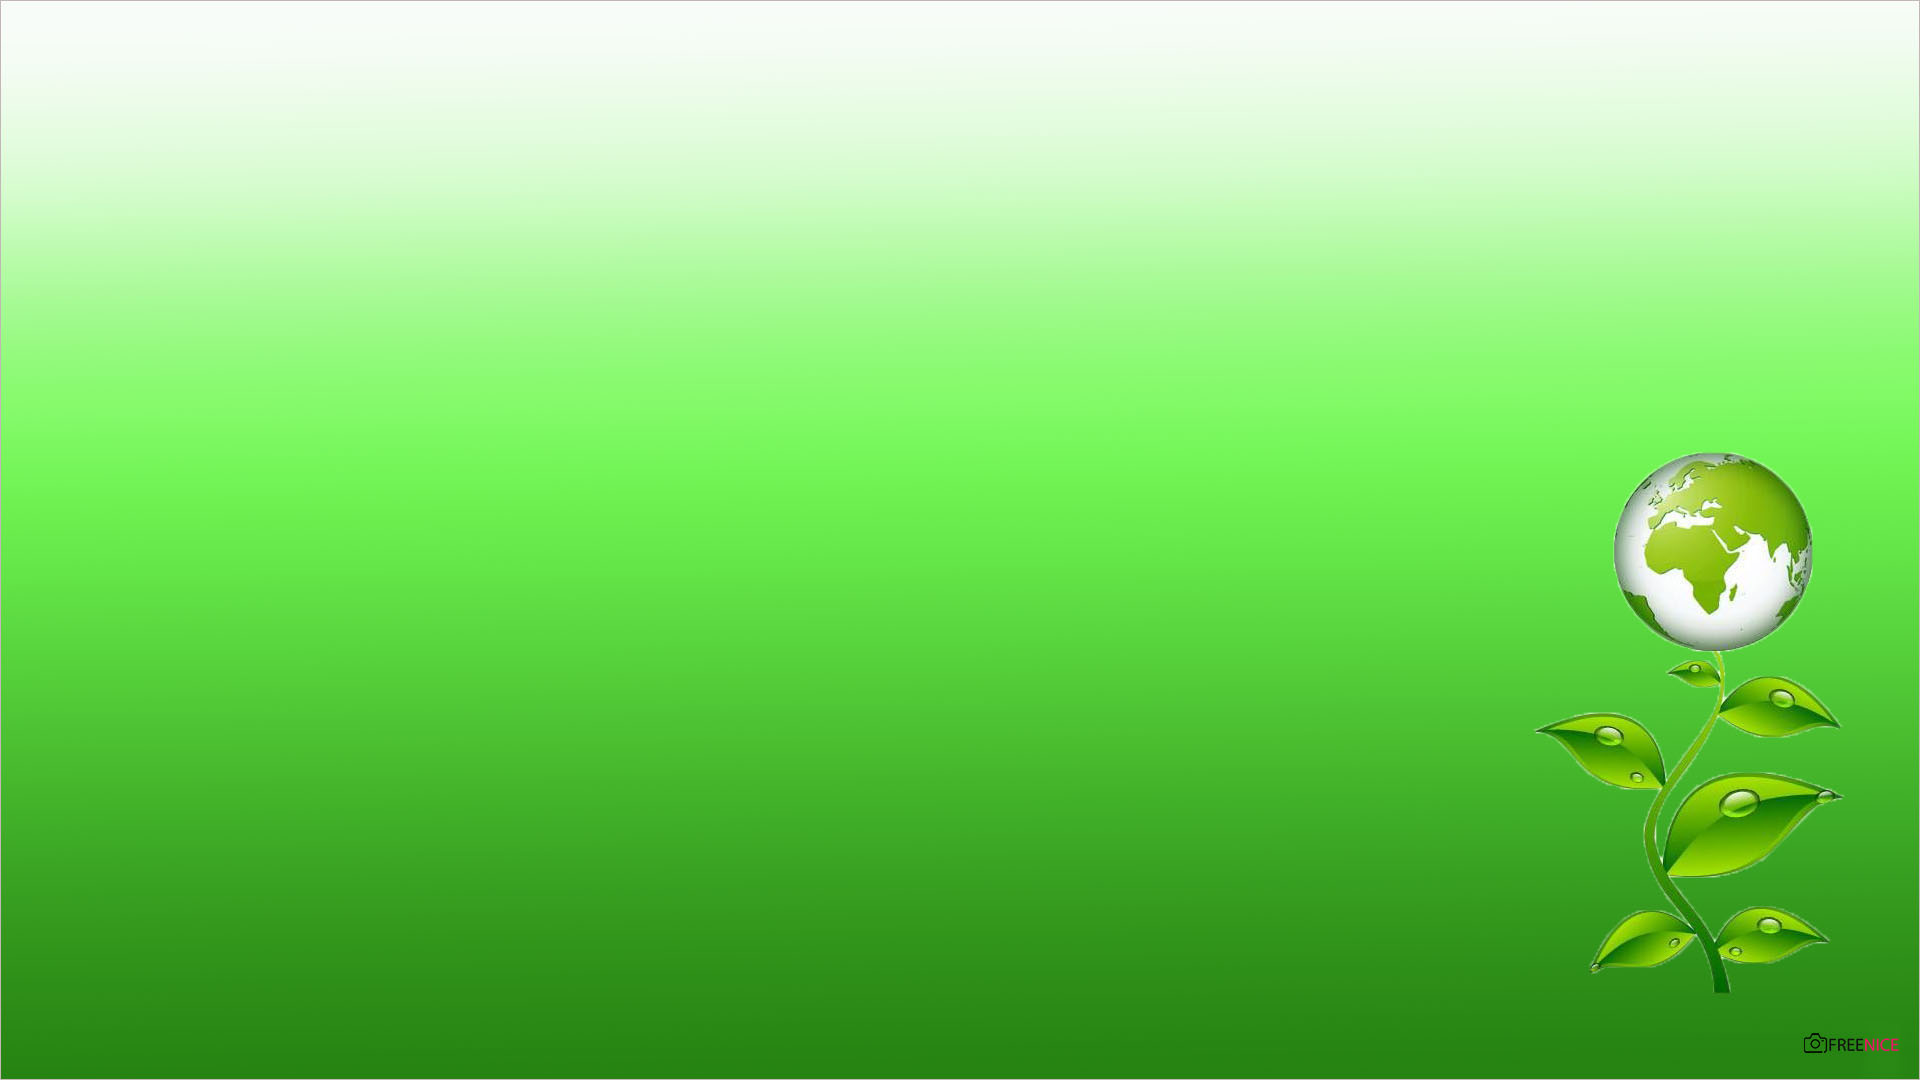 Hình nền Powerpoint màu xanh lá cây đẹp nhất 2022  TH Điện Biên Đông